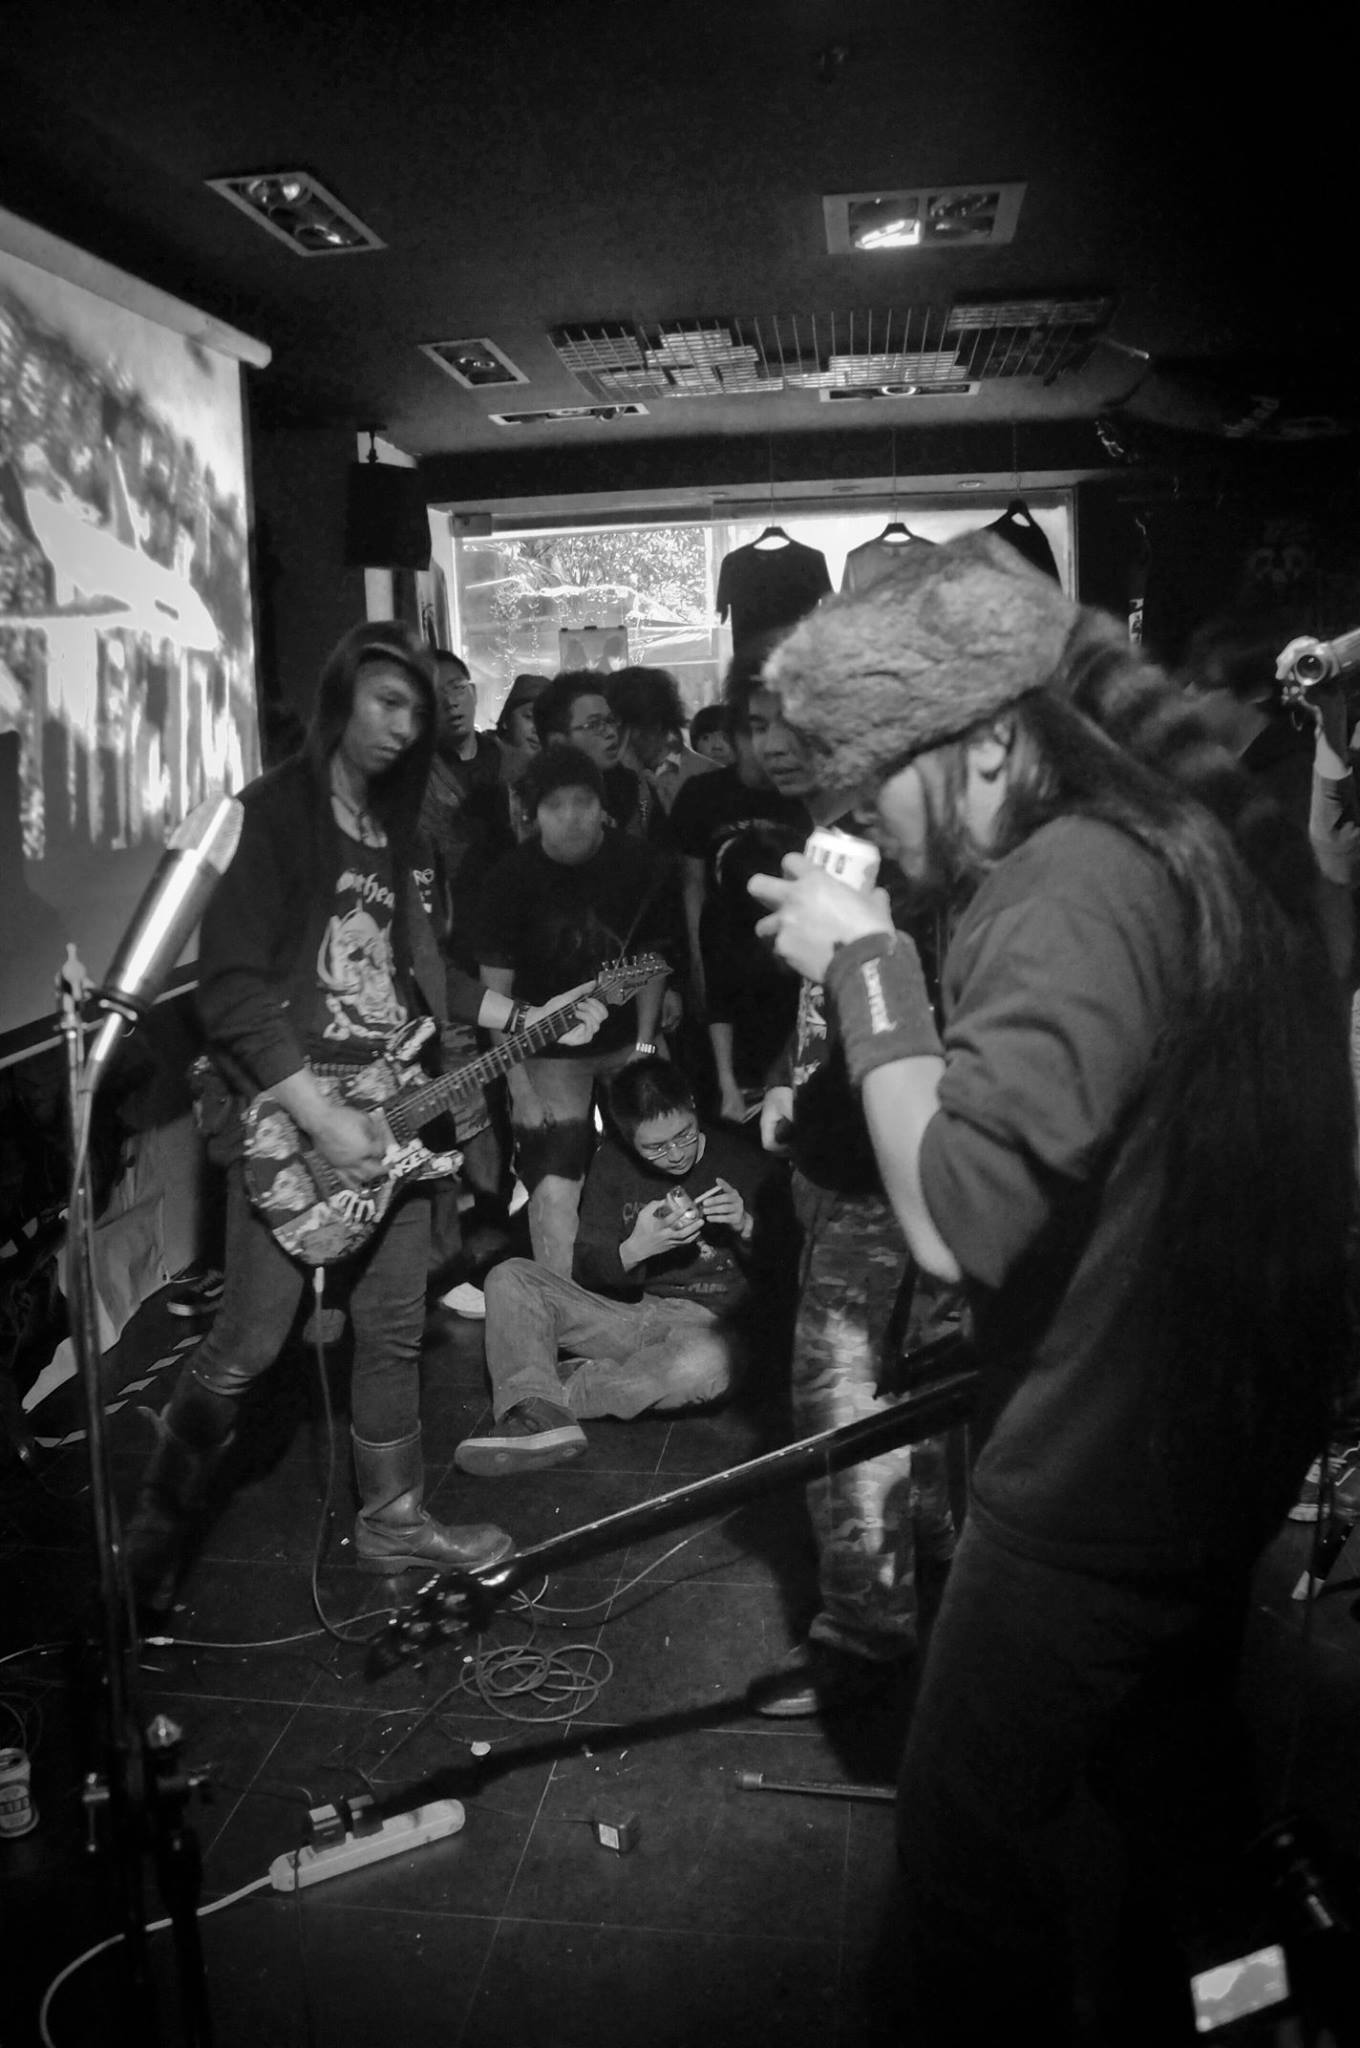 powei-frankhuang-taipei-punk-metal-scene.jpg